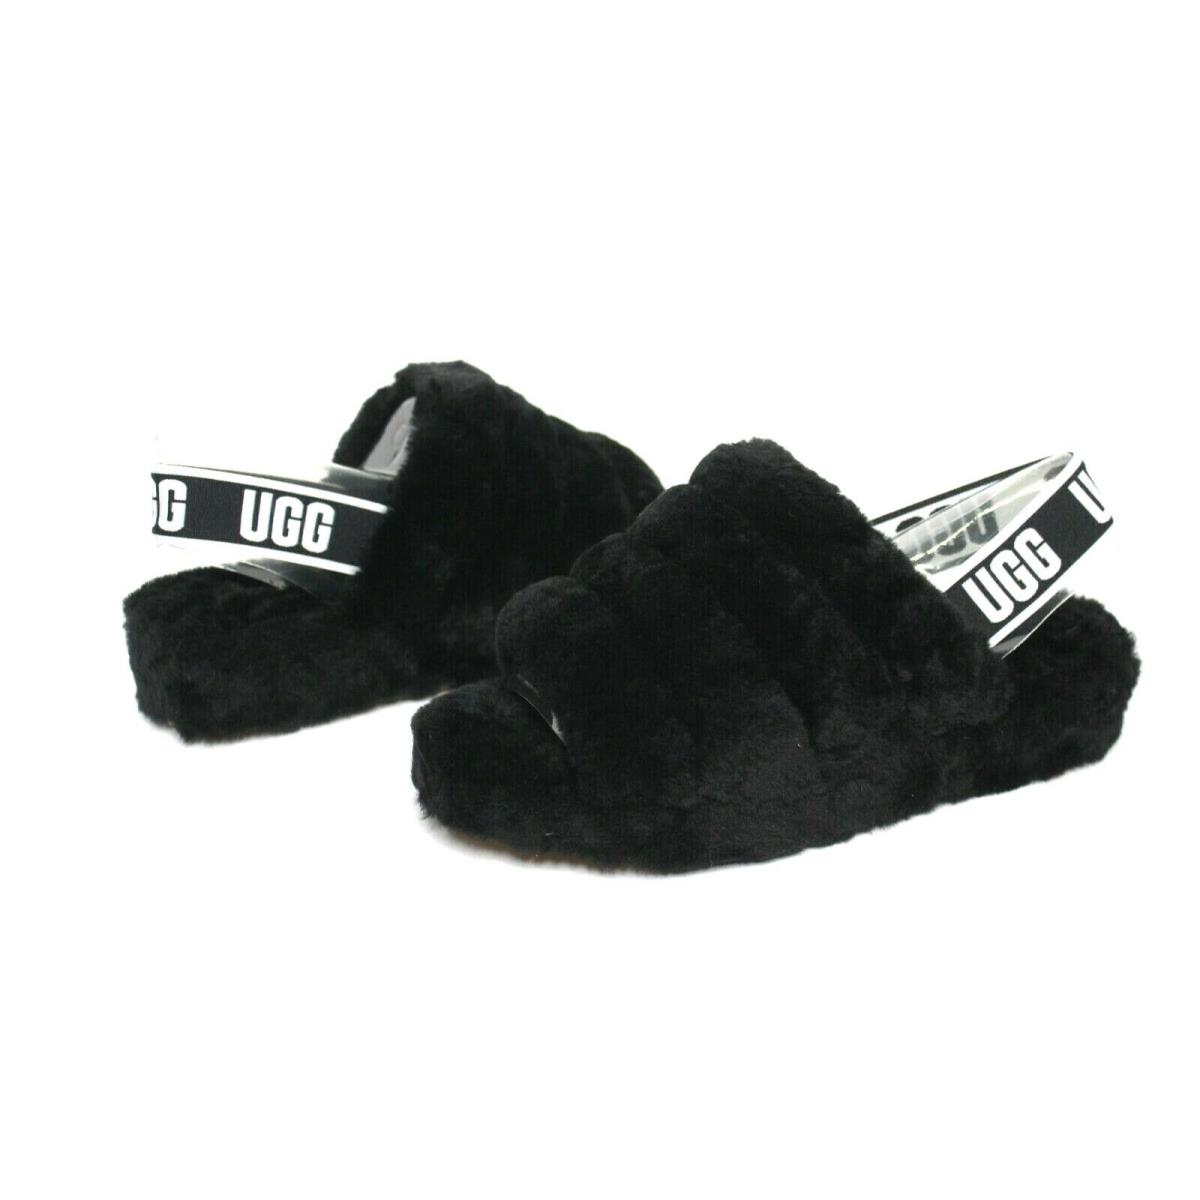 Ugg Fluff Yeah Slides Sheepskin Black Color Slipper Sandals Size 10 US